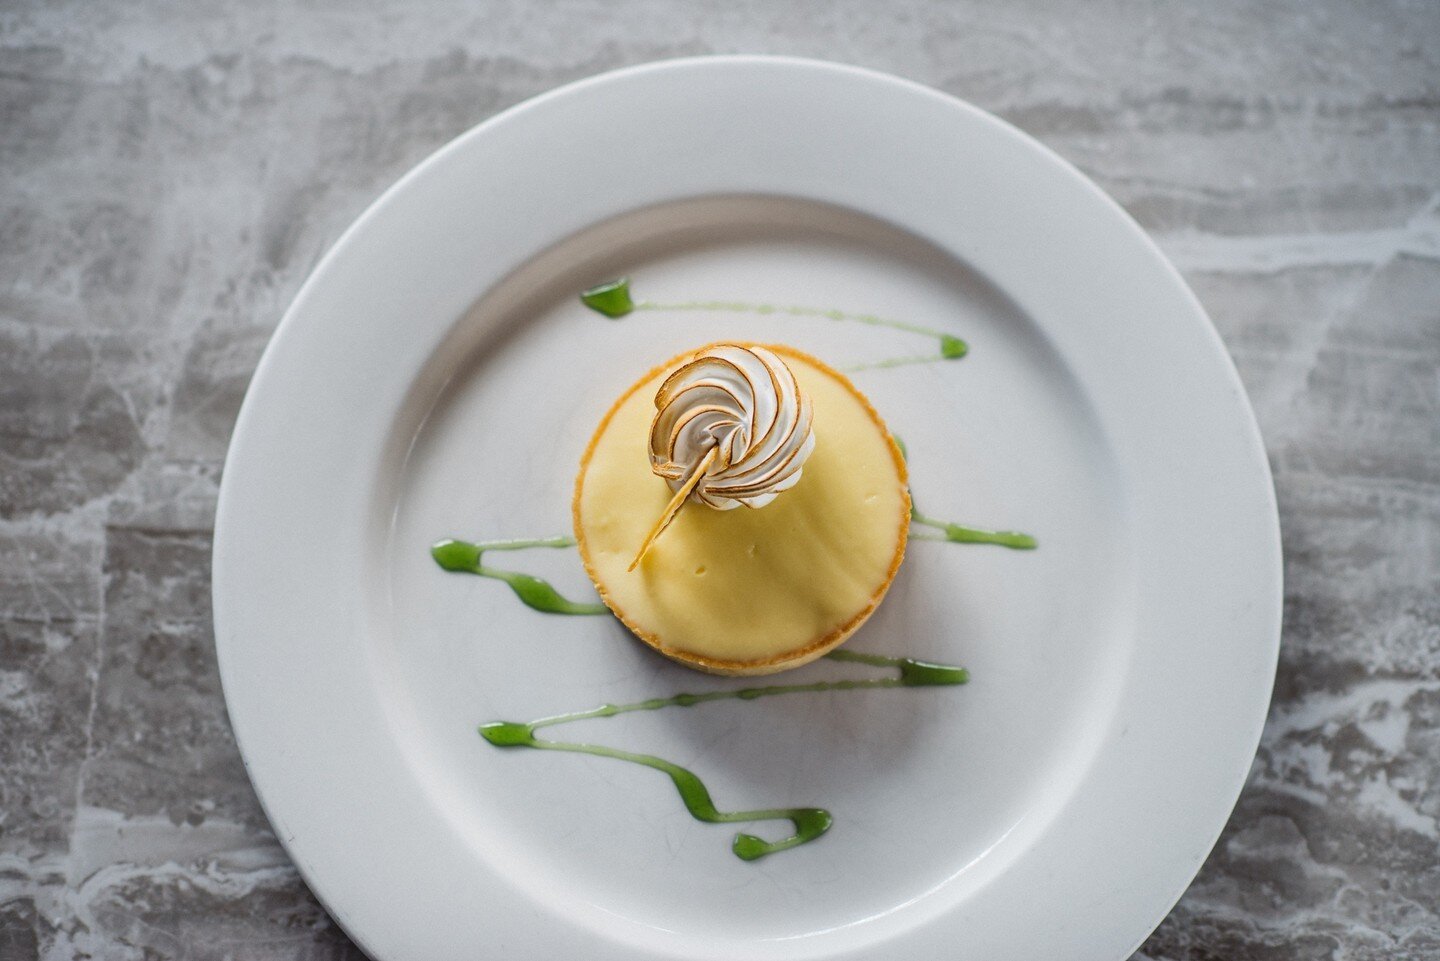 Notre tarte au citron 🍋 est le dessert id&eacute;al apr&egrave;s un repas copieux !